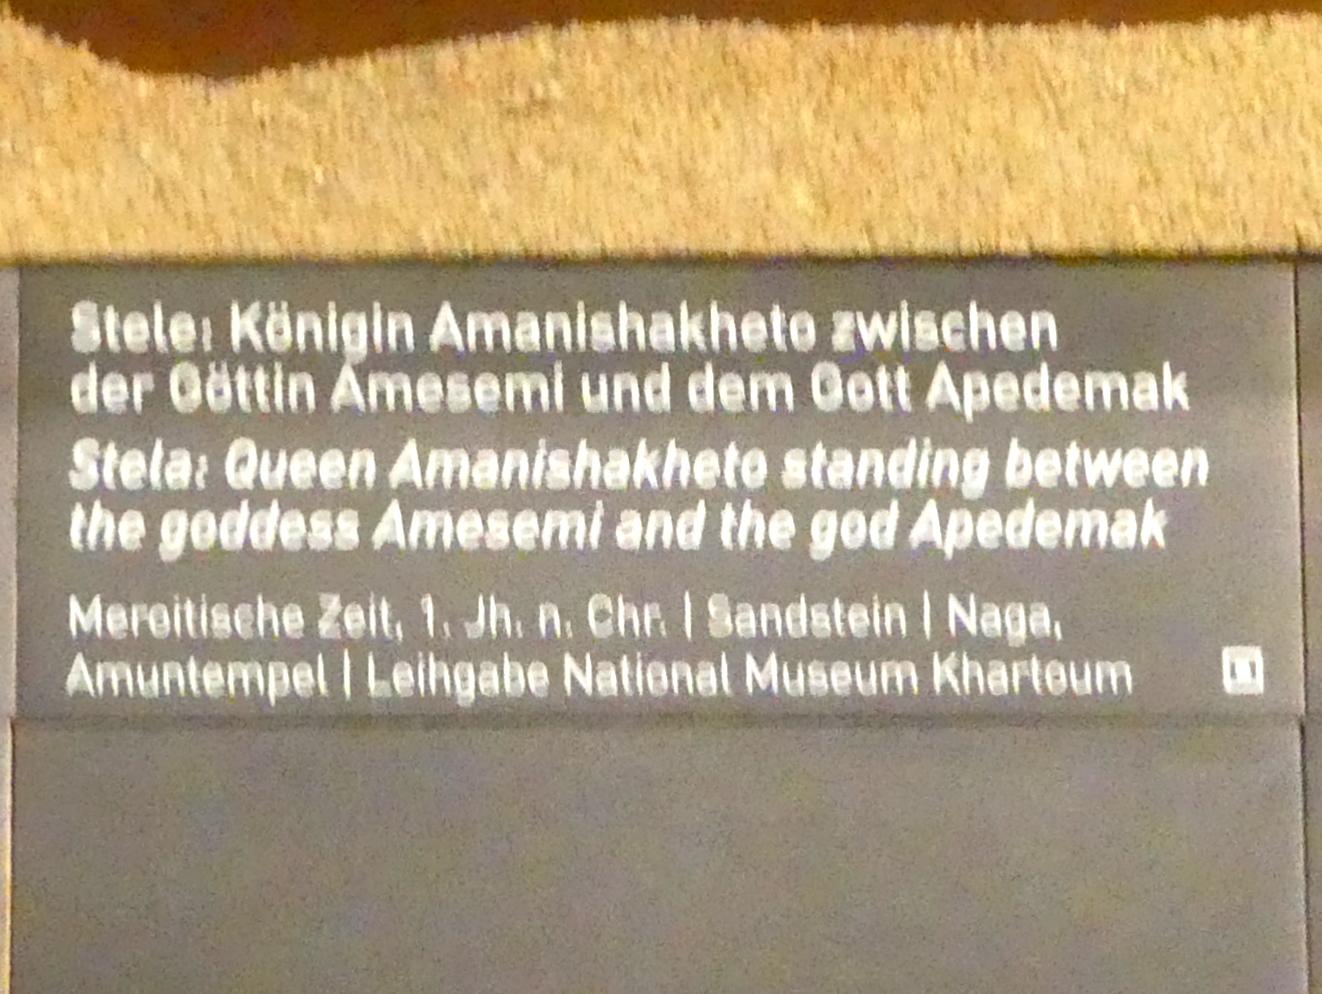 Stele: Königin Amanishakheto zwischen der Göttin Amesemi und dem Gott Apedemak, Meroitische Zeit, 200 v. Chr. - 500 n. Chr., 1 - 100, Bild 2/2